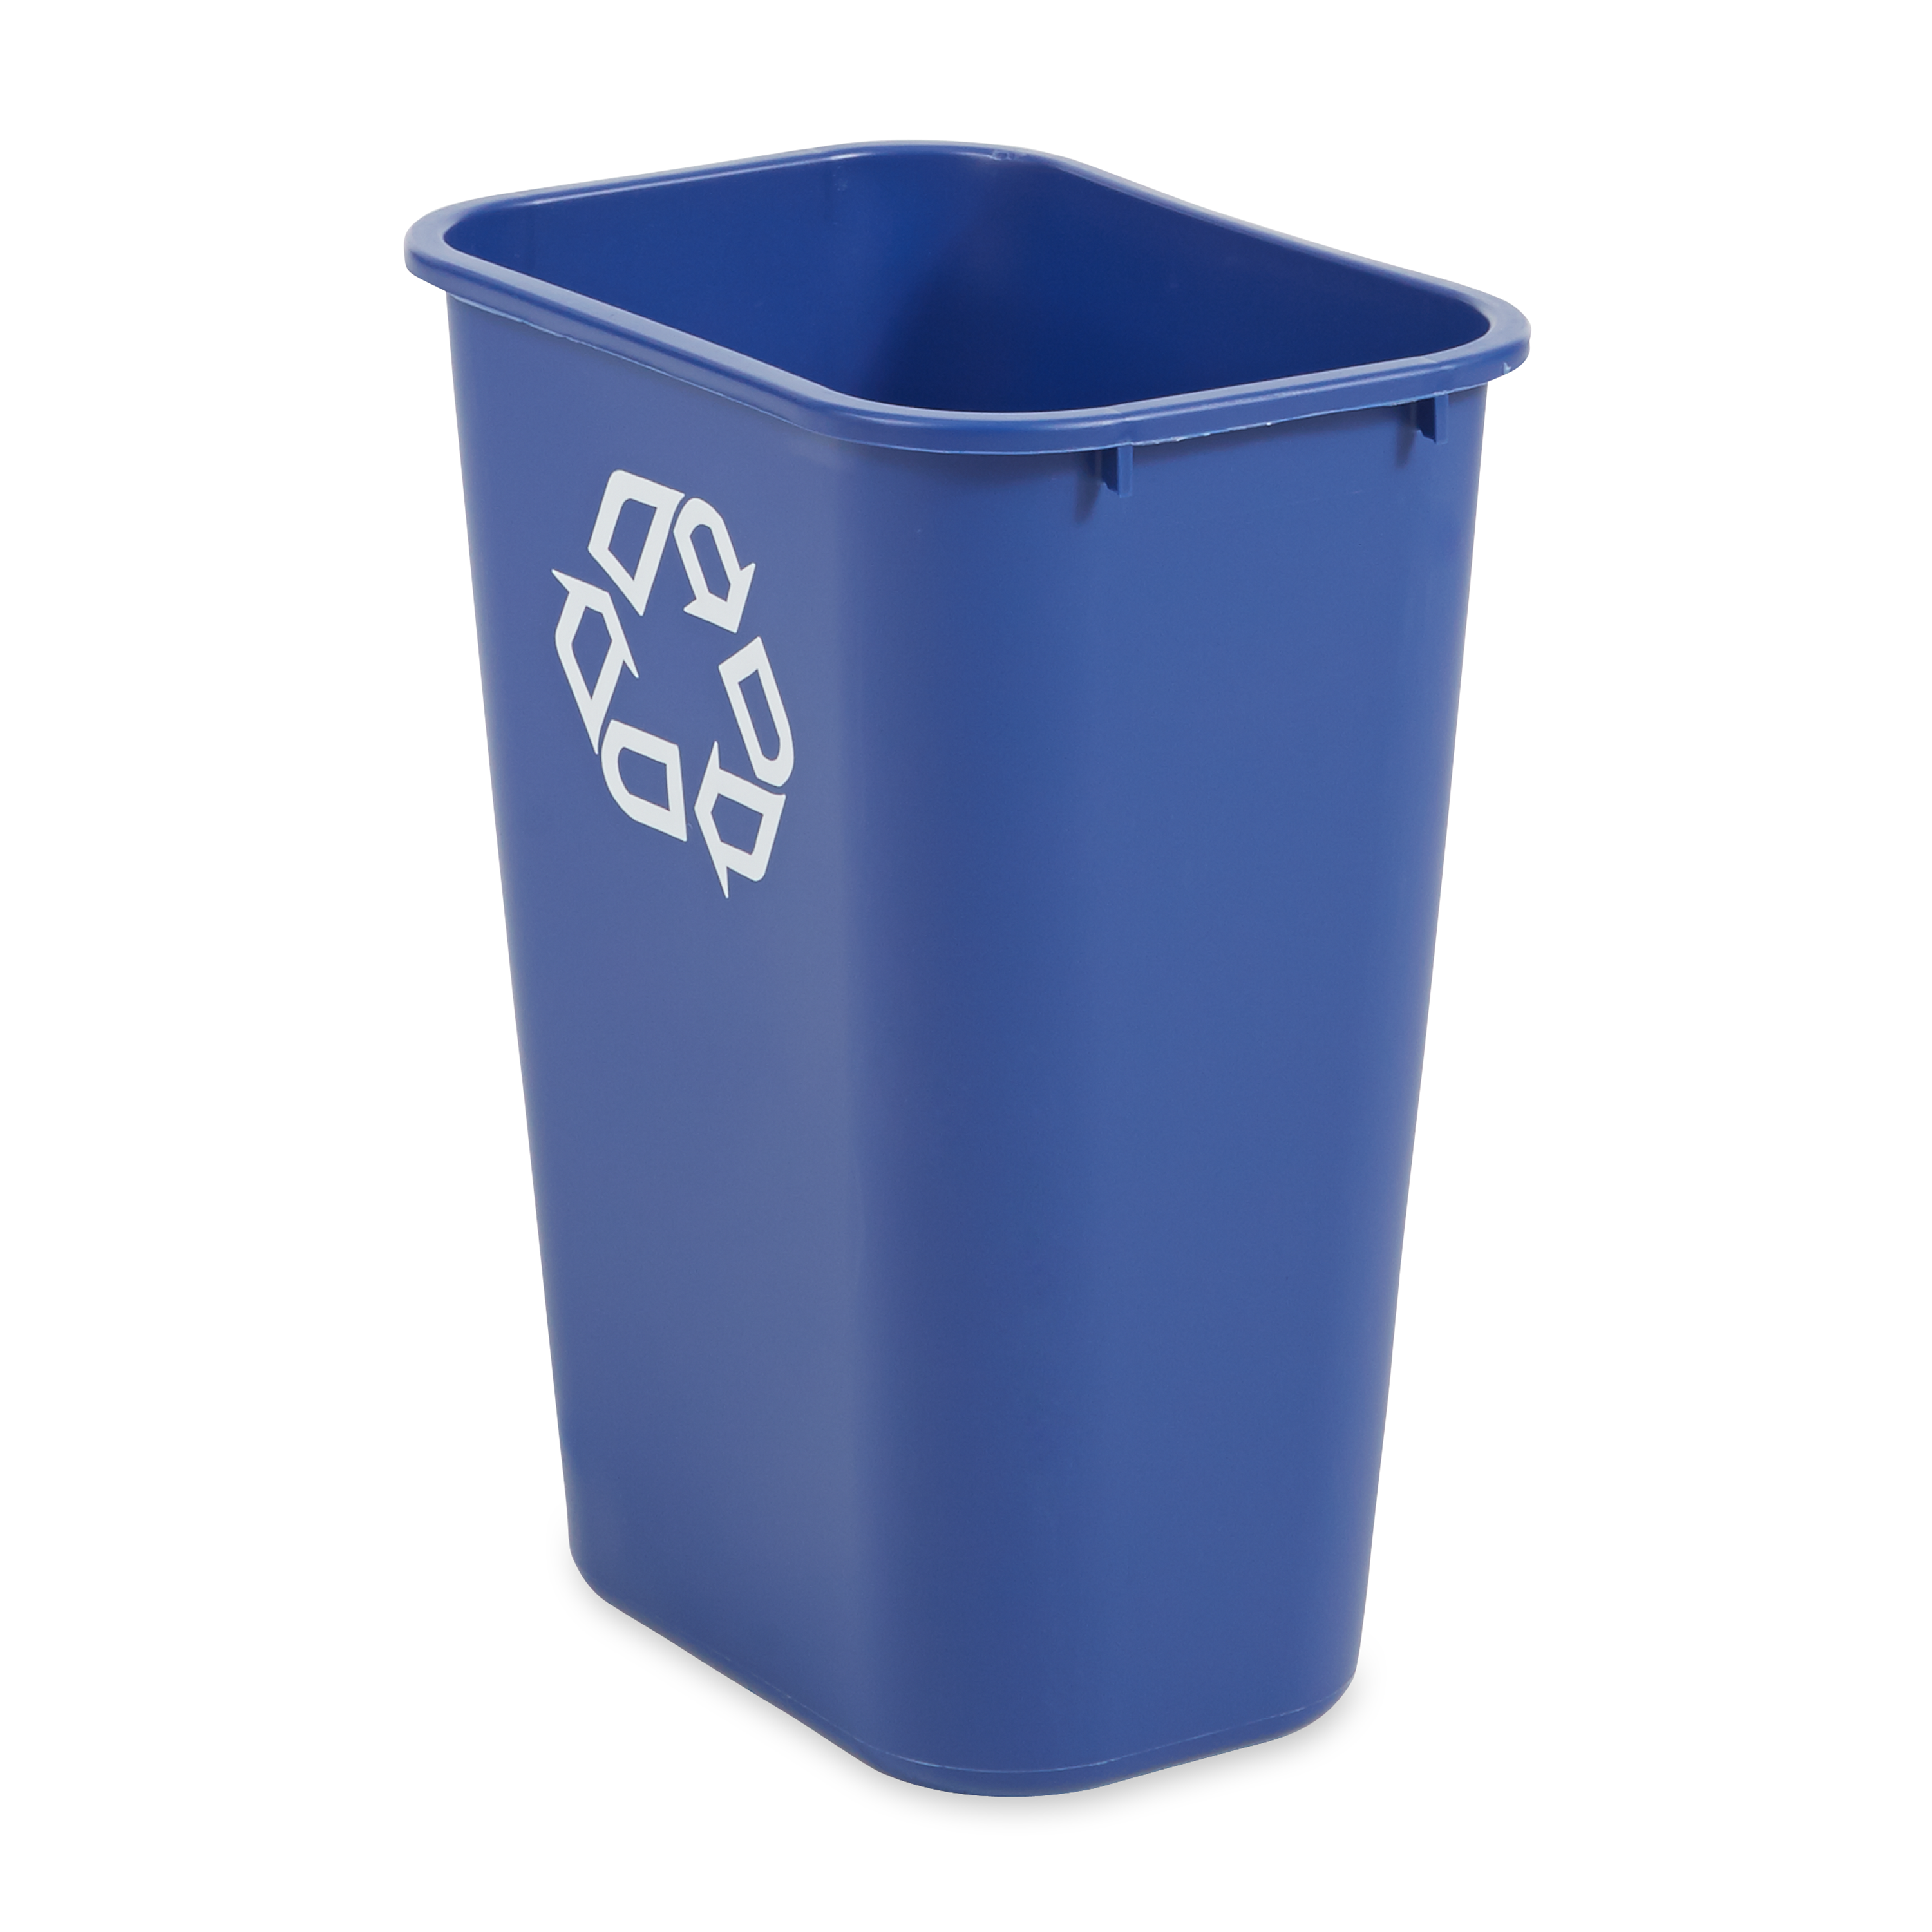 Nouveau Rubbermaid Commercial Poubelle Recyclage bleu côté Bin #2950 cas de 12 